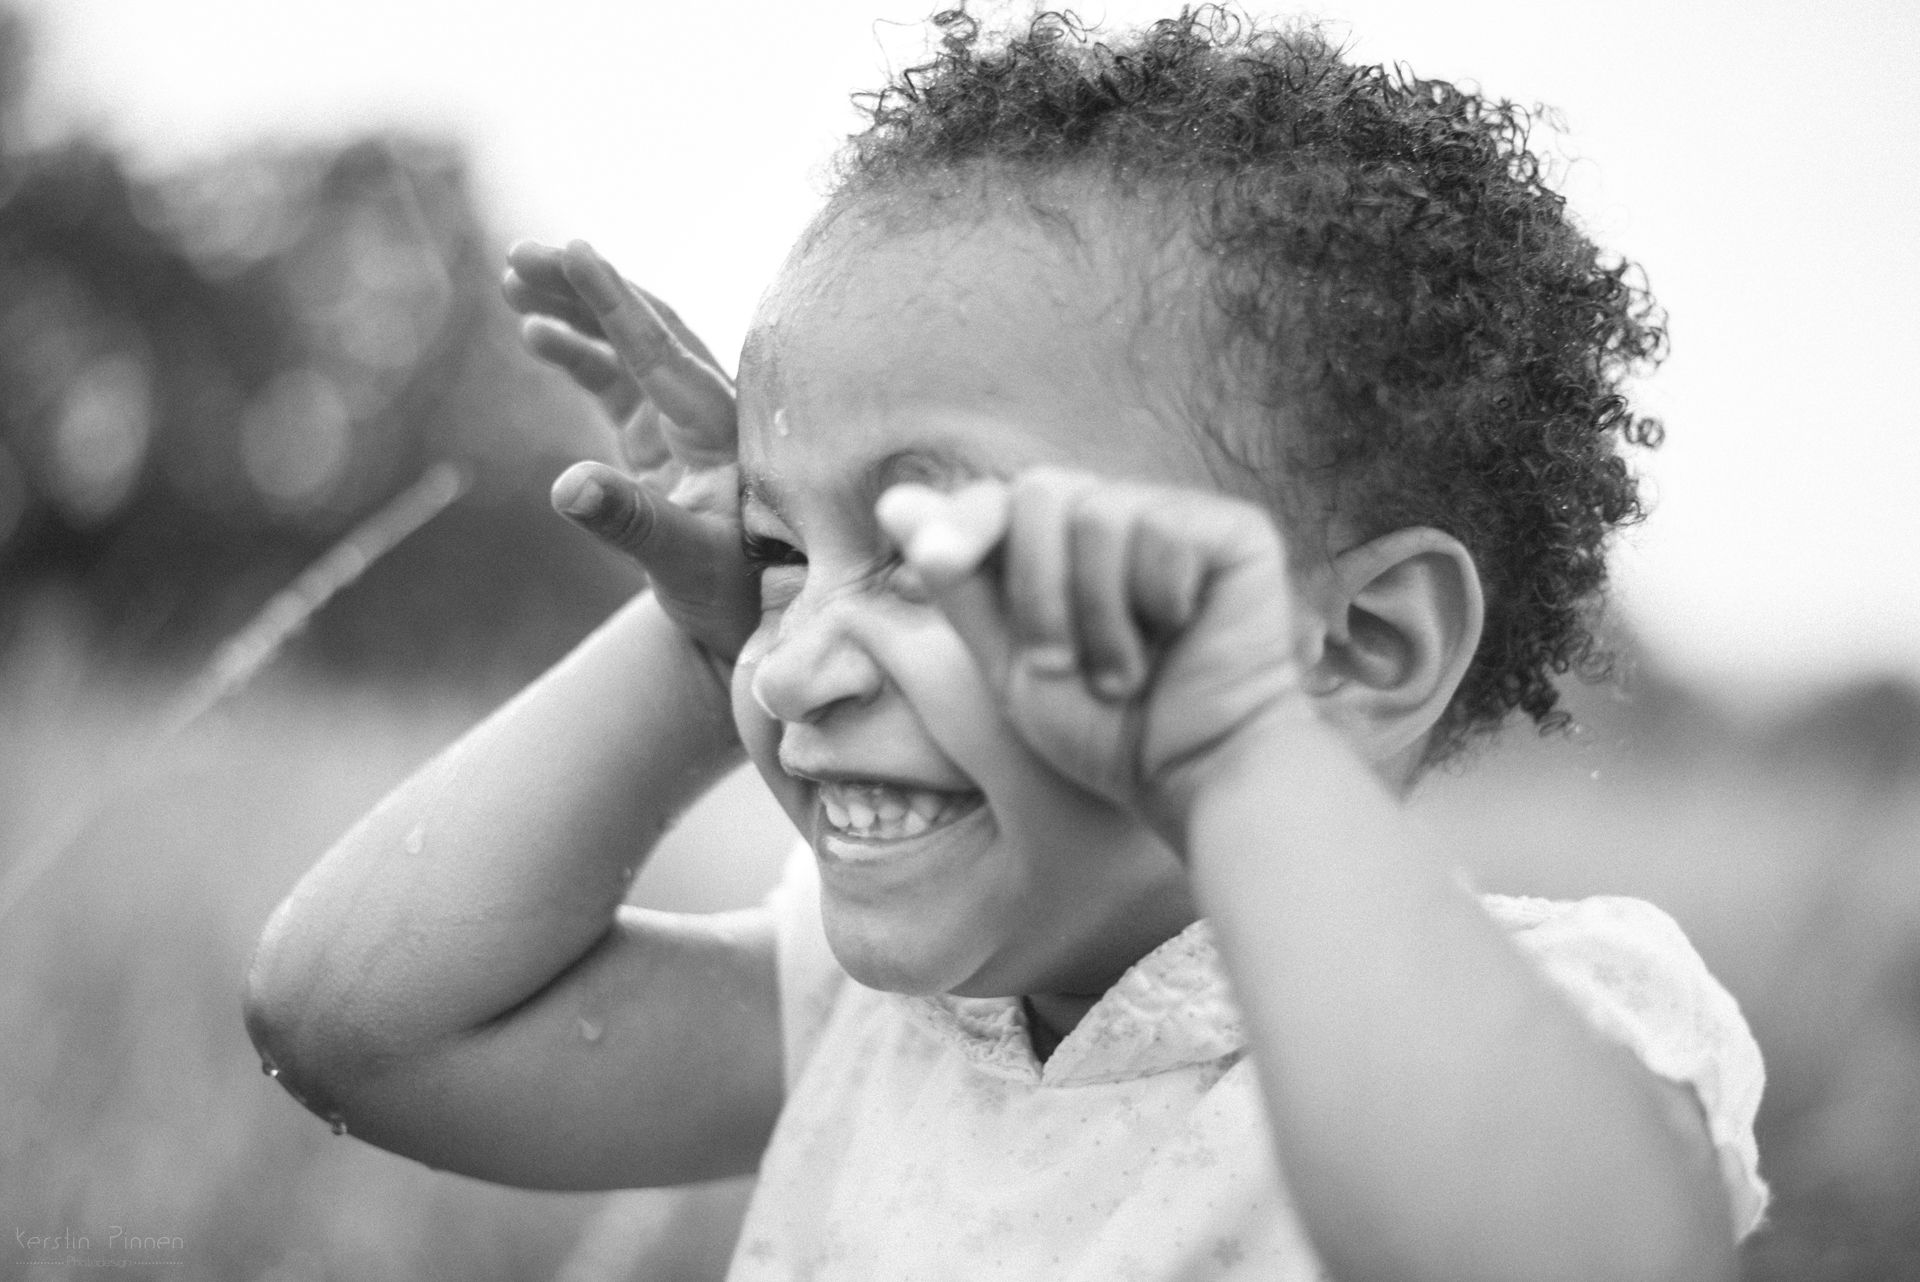 Kinder-Fotoshooting in schwarz-weiß